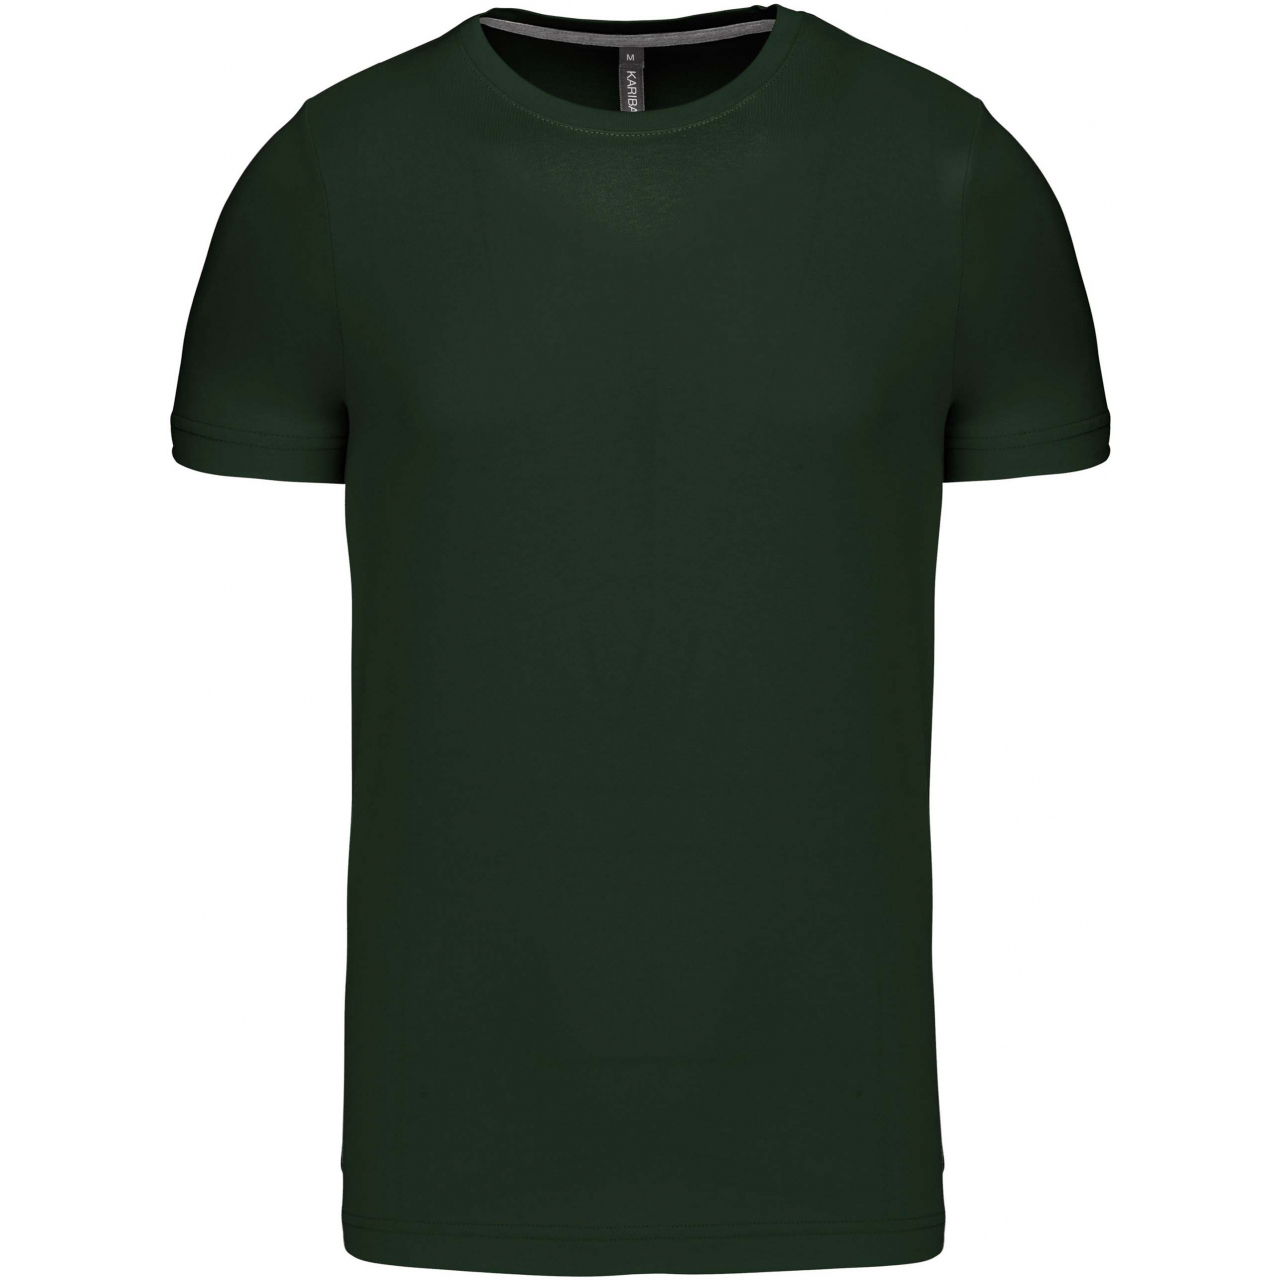 Pánské tričko Kariban krátký rukáv - tmavě zelené, M